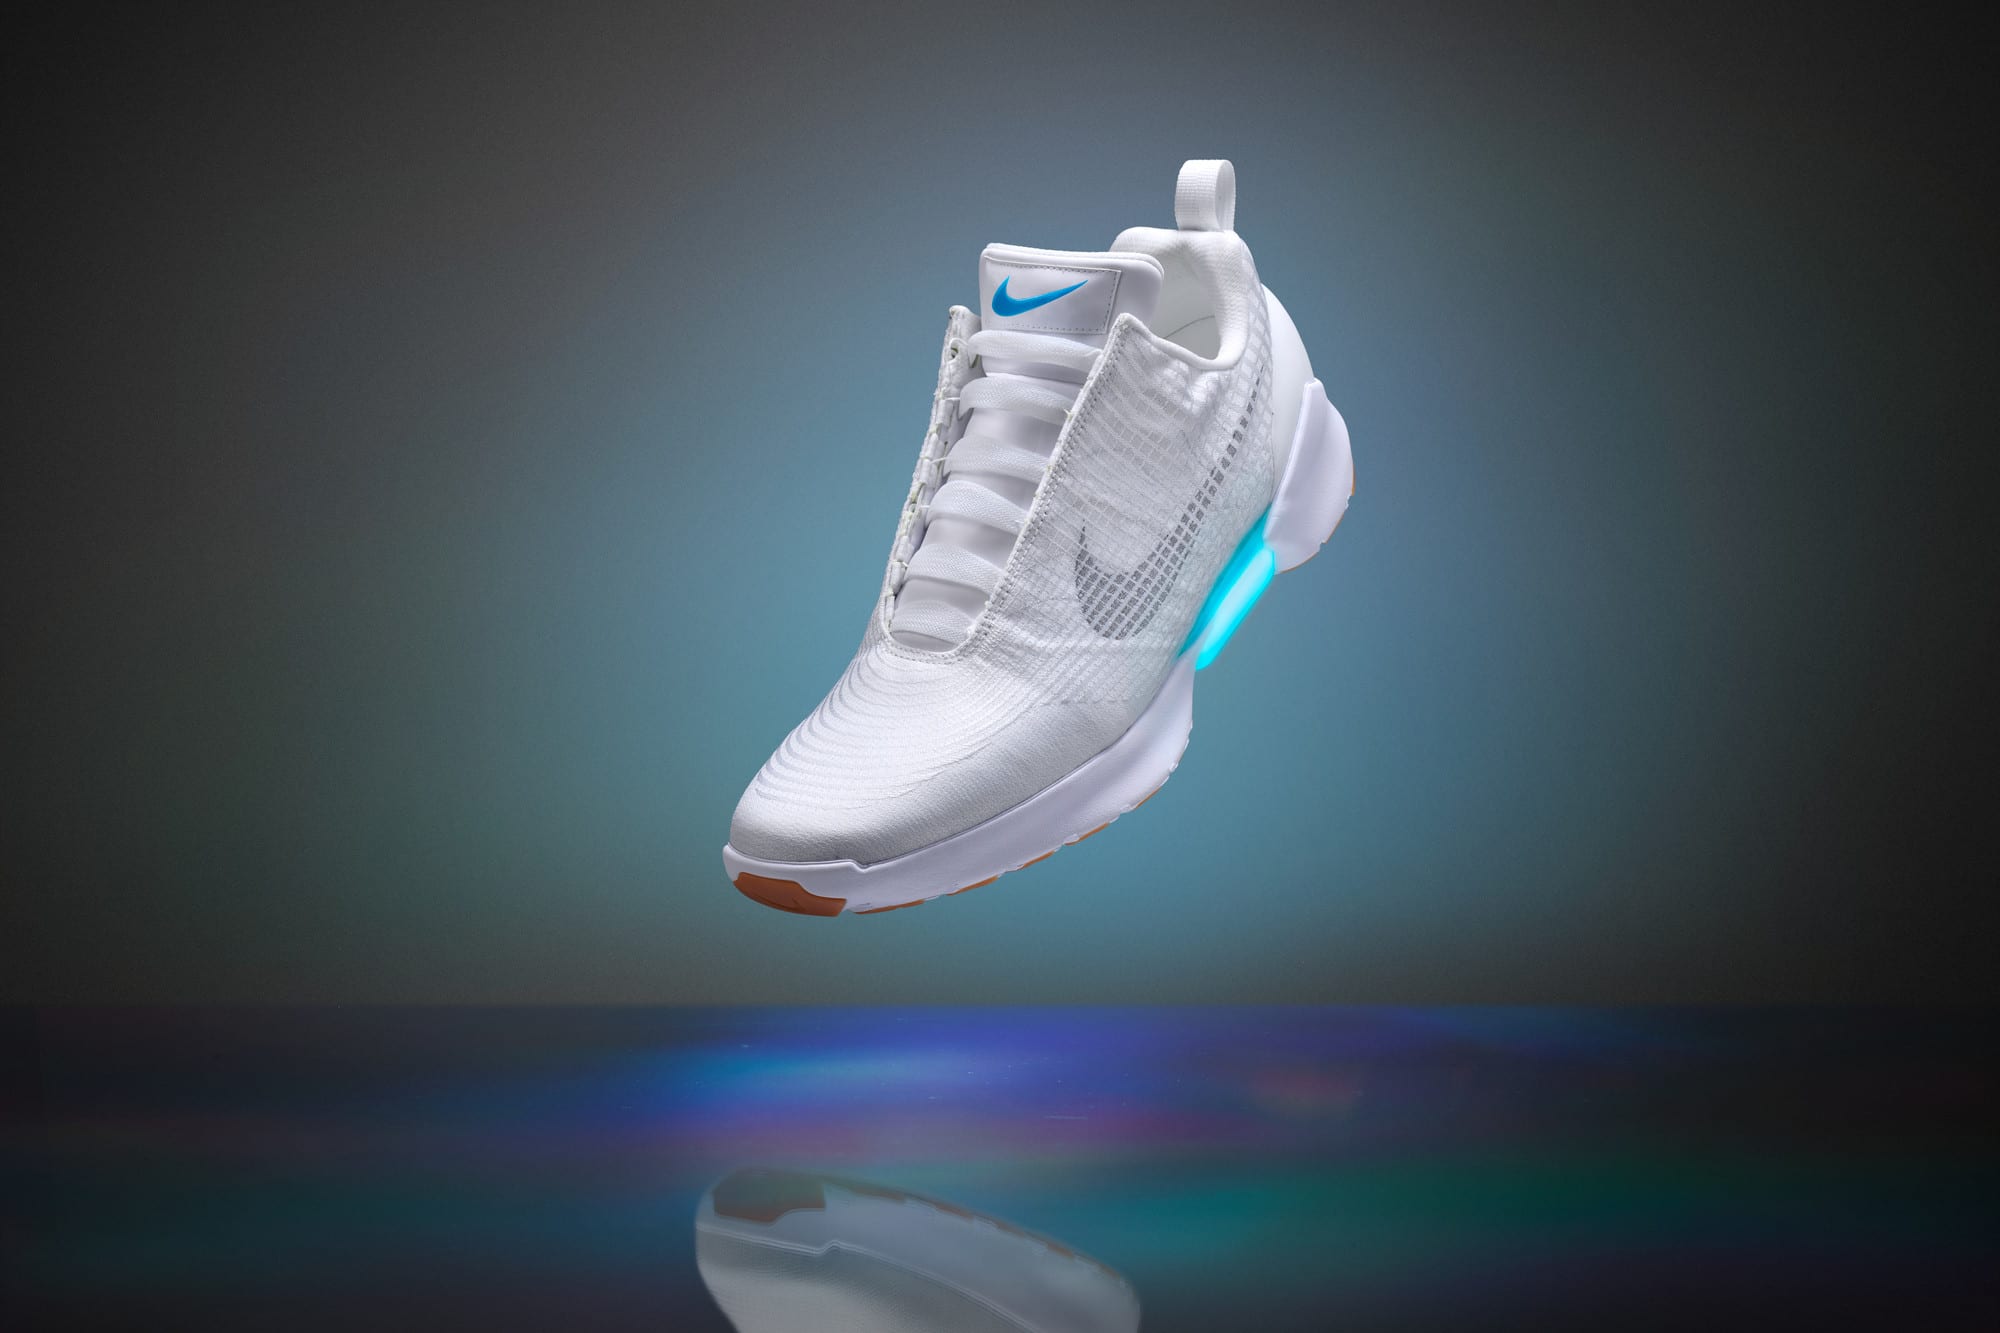 the Future II' sneakers, plus 